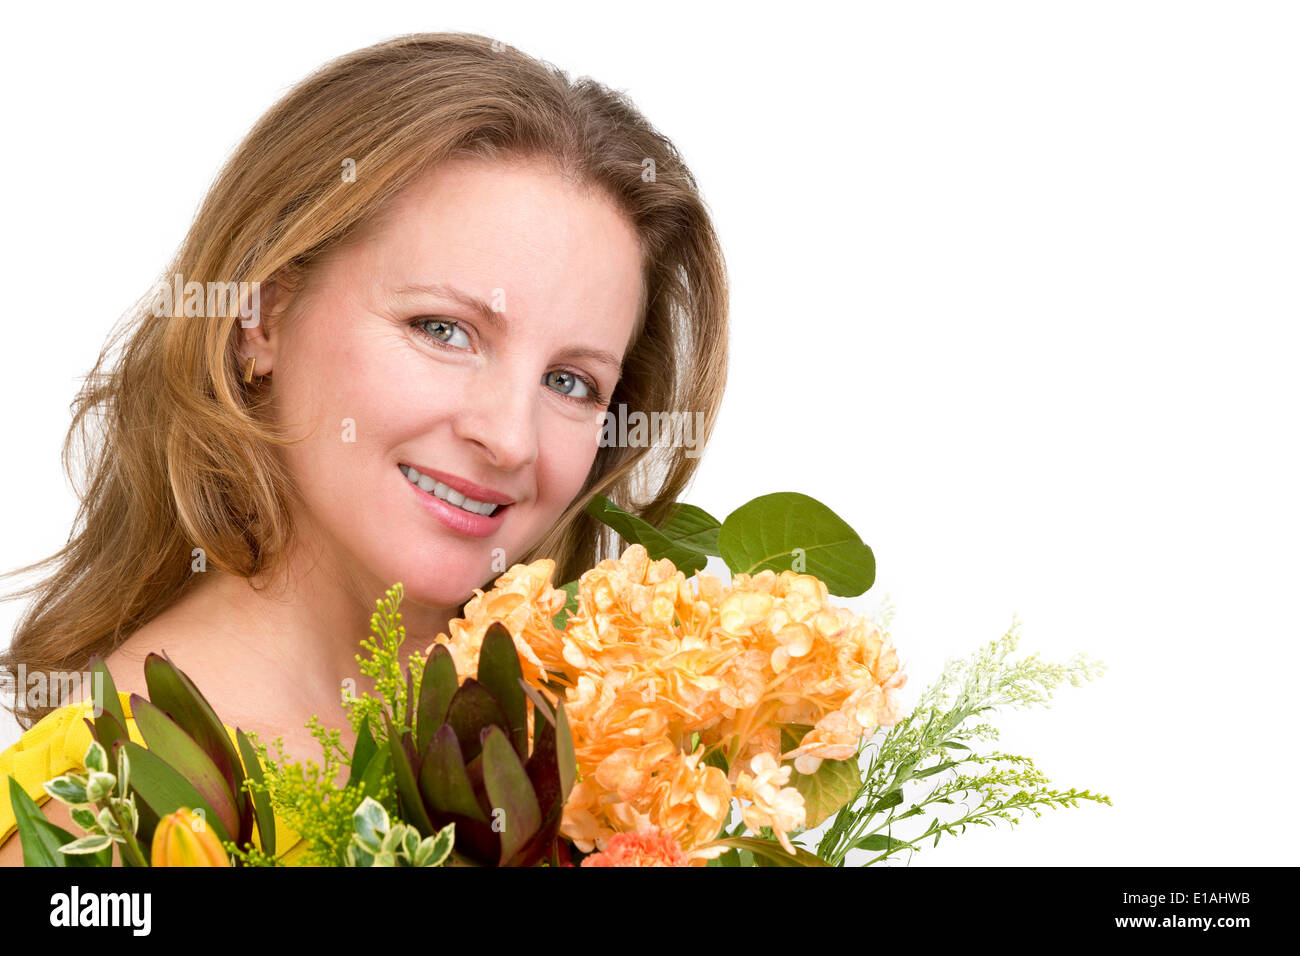 Felice donna sorridente dietro il mazzo di fiori che esprime i suoi sentimenti positivi genuinamente Foto Stock